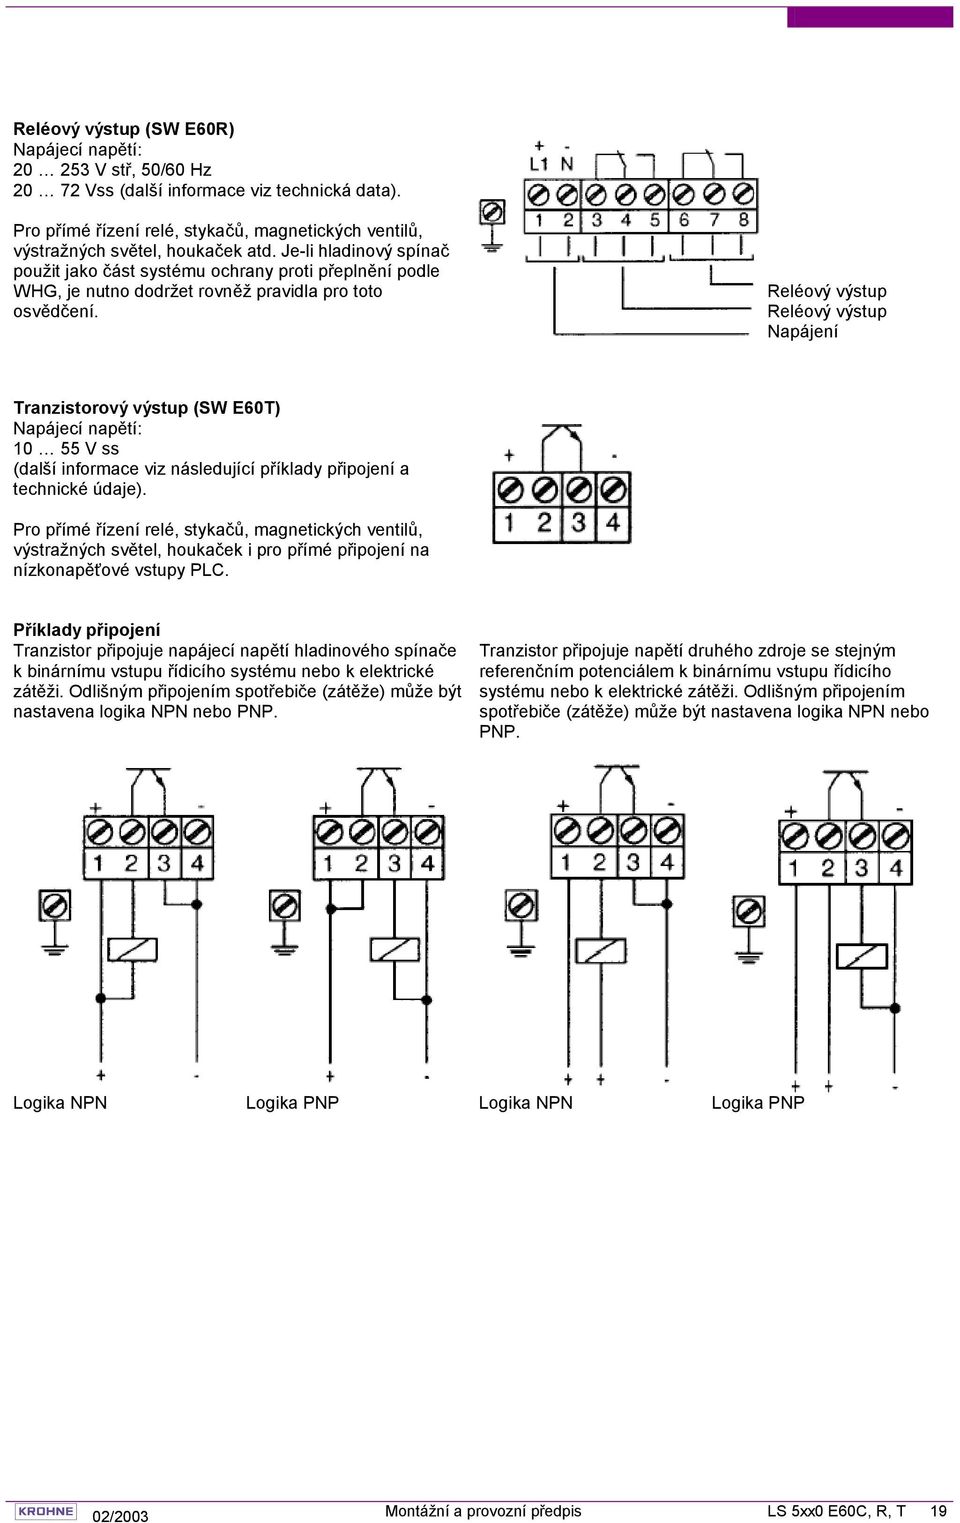 Reléový výstup Reléový výstup Napájení Tranzistorový výstup (SW E60T) Napájecí napětí: 10 55 V ss (další informace viz následující příklady připojení a technické údaje).